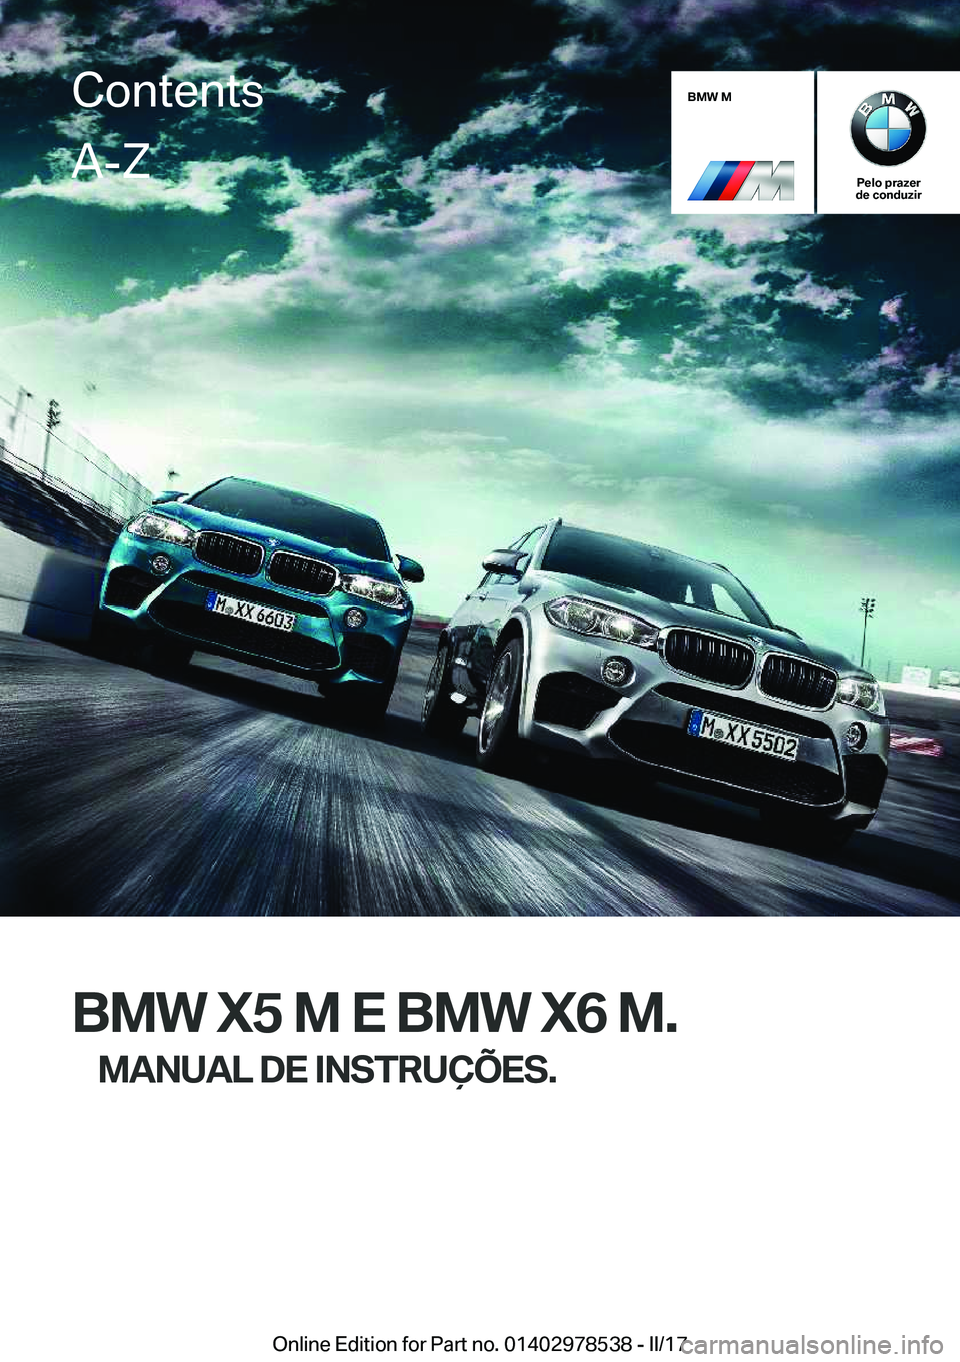 BMW X6 M 2017  Manual do condutor (in Portuguese) �B�M�W��M
�P�e�l�o��p�r�a�z�e�r
�d�e��c�o�n�d�u�z�i�r
�B�M�W��X�5��M��E��B�M�W��X�6��M�.
�M�A�N�U�A�L��D�E��I�N�S�T�R�U�